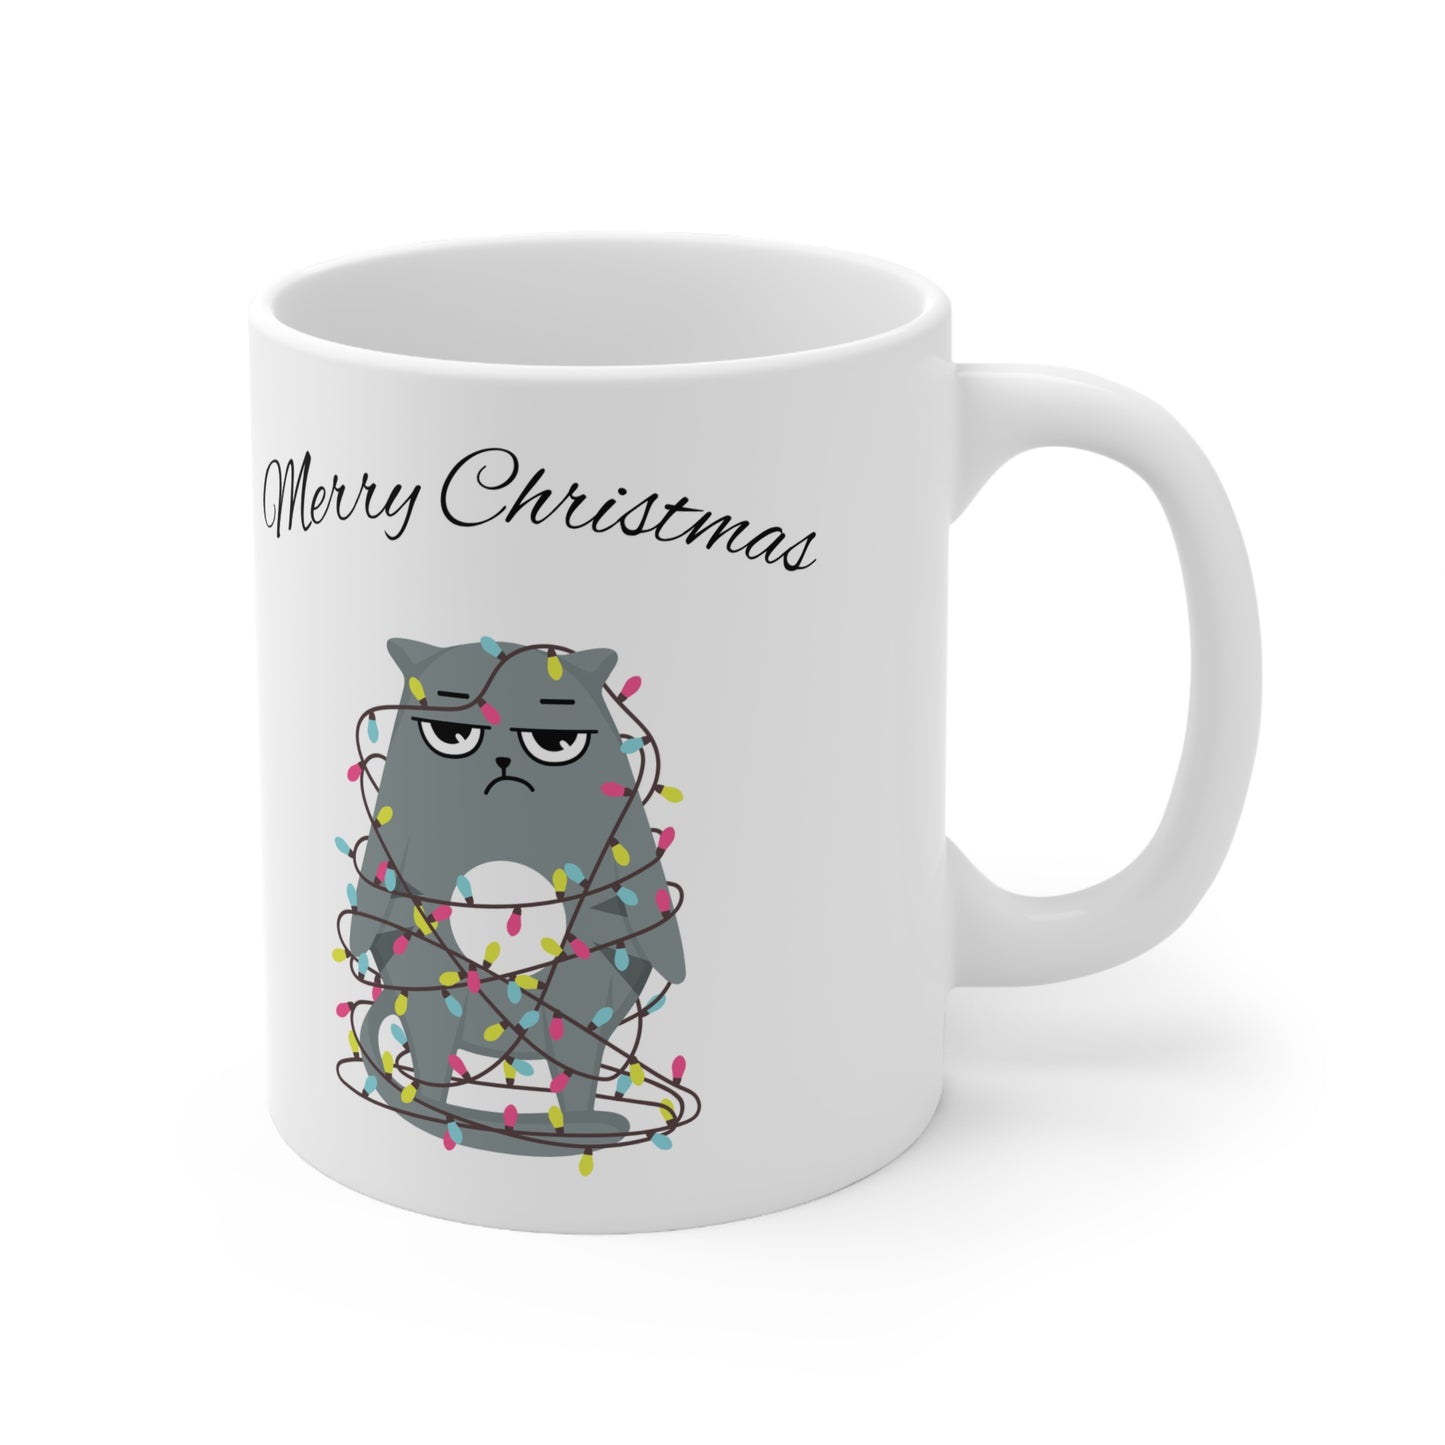 Merry Christmas with Cat Printed Ceramic Mug (11, 15oz)